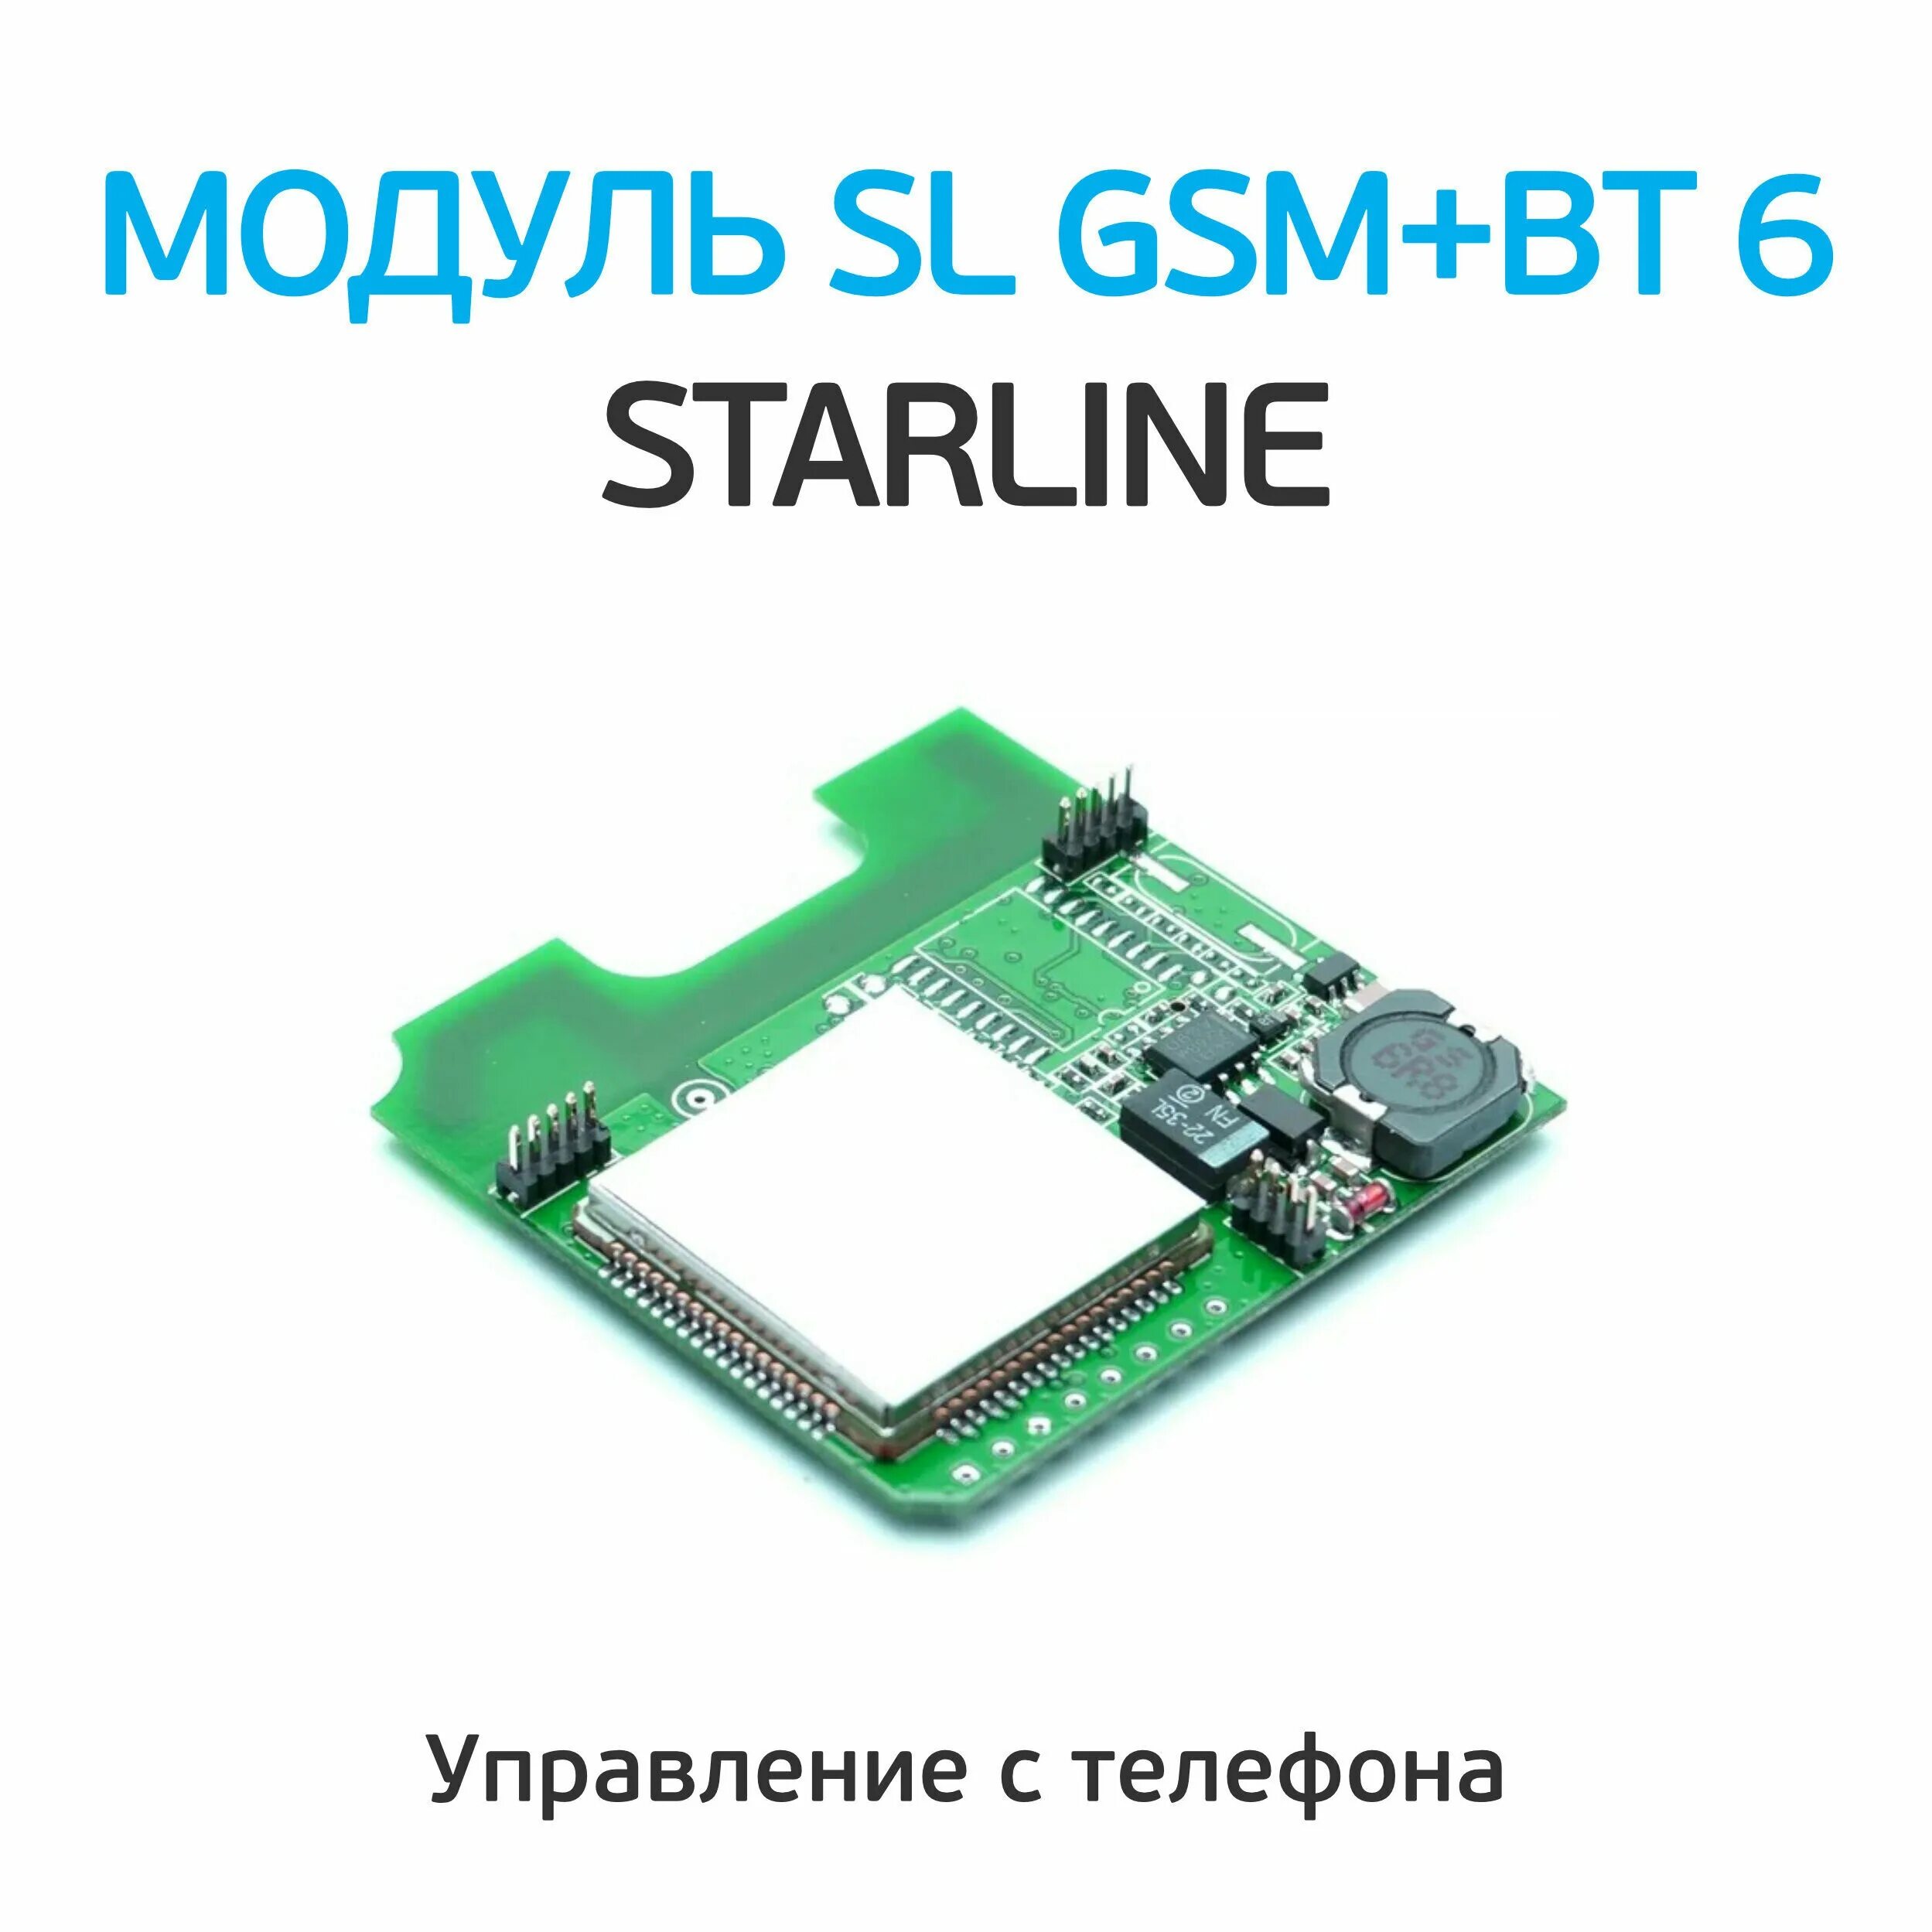 Gsm модуль старлайн купить. GSM модуль старлайн Expert s6. GSM BT мастер 6. Программатор STARLINE. GSM модуль STARLINE a93.